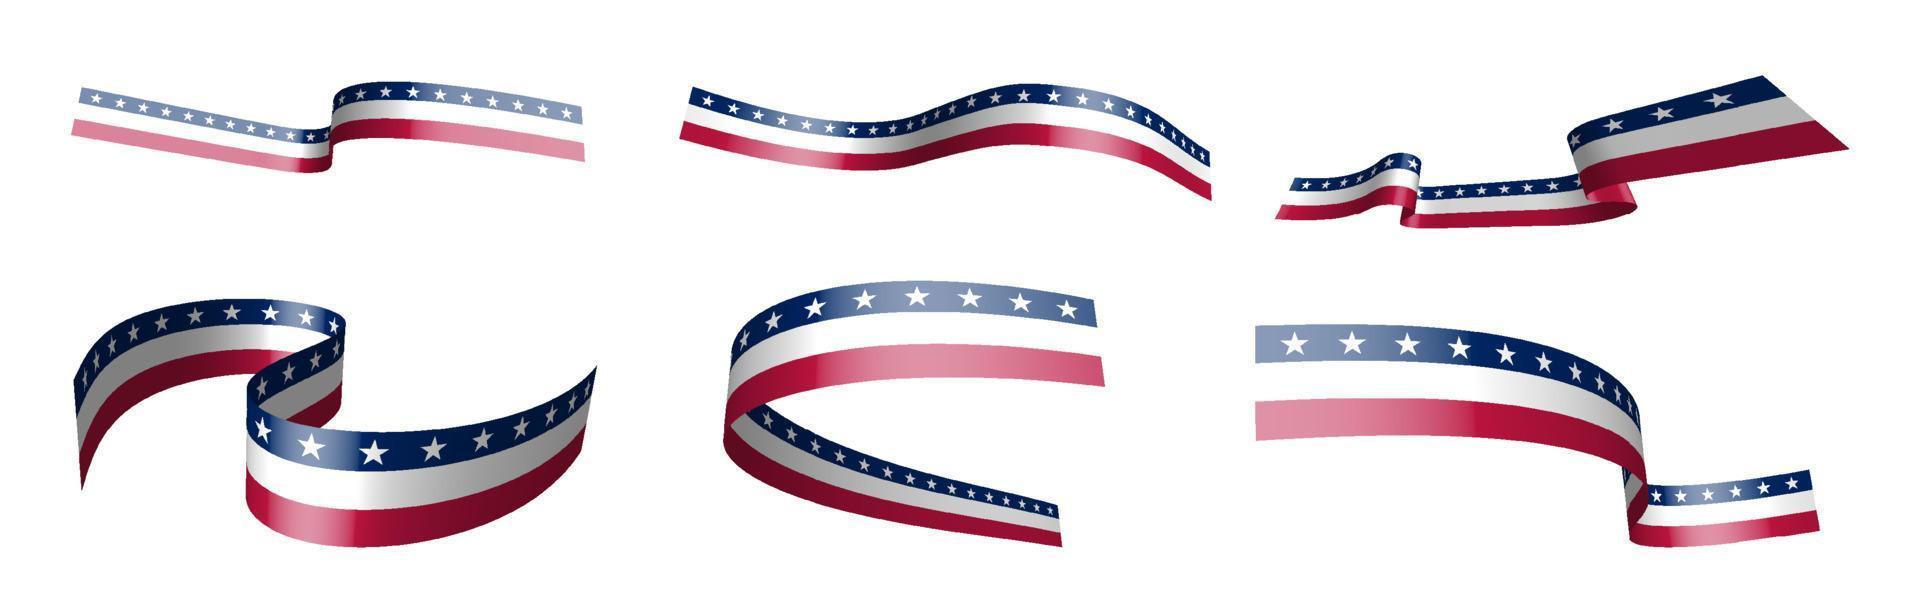 ensemble de rubans de vacances. drapeau américain flottant au vent. séparation en couches inférieures et supérieures. élément de conception. vecteur sur fond blanc